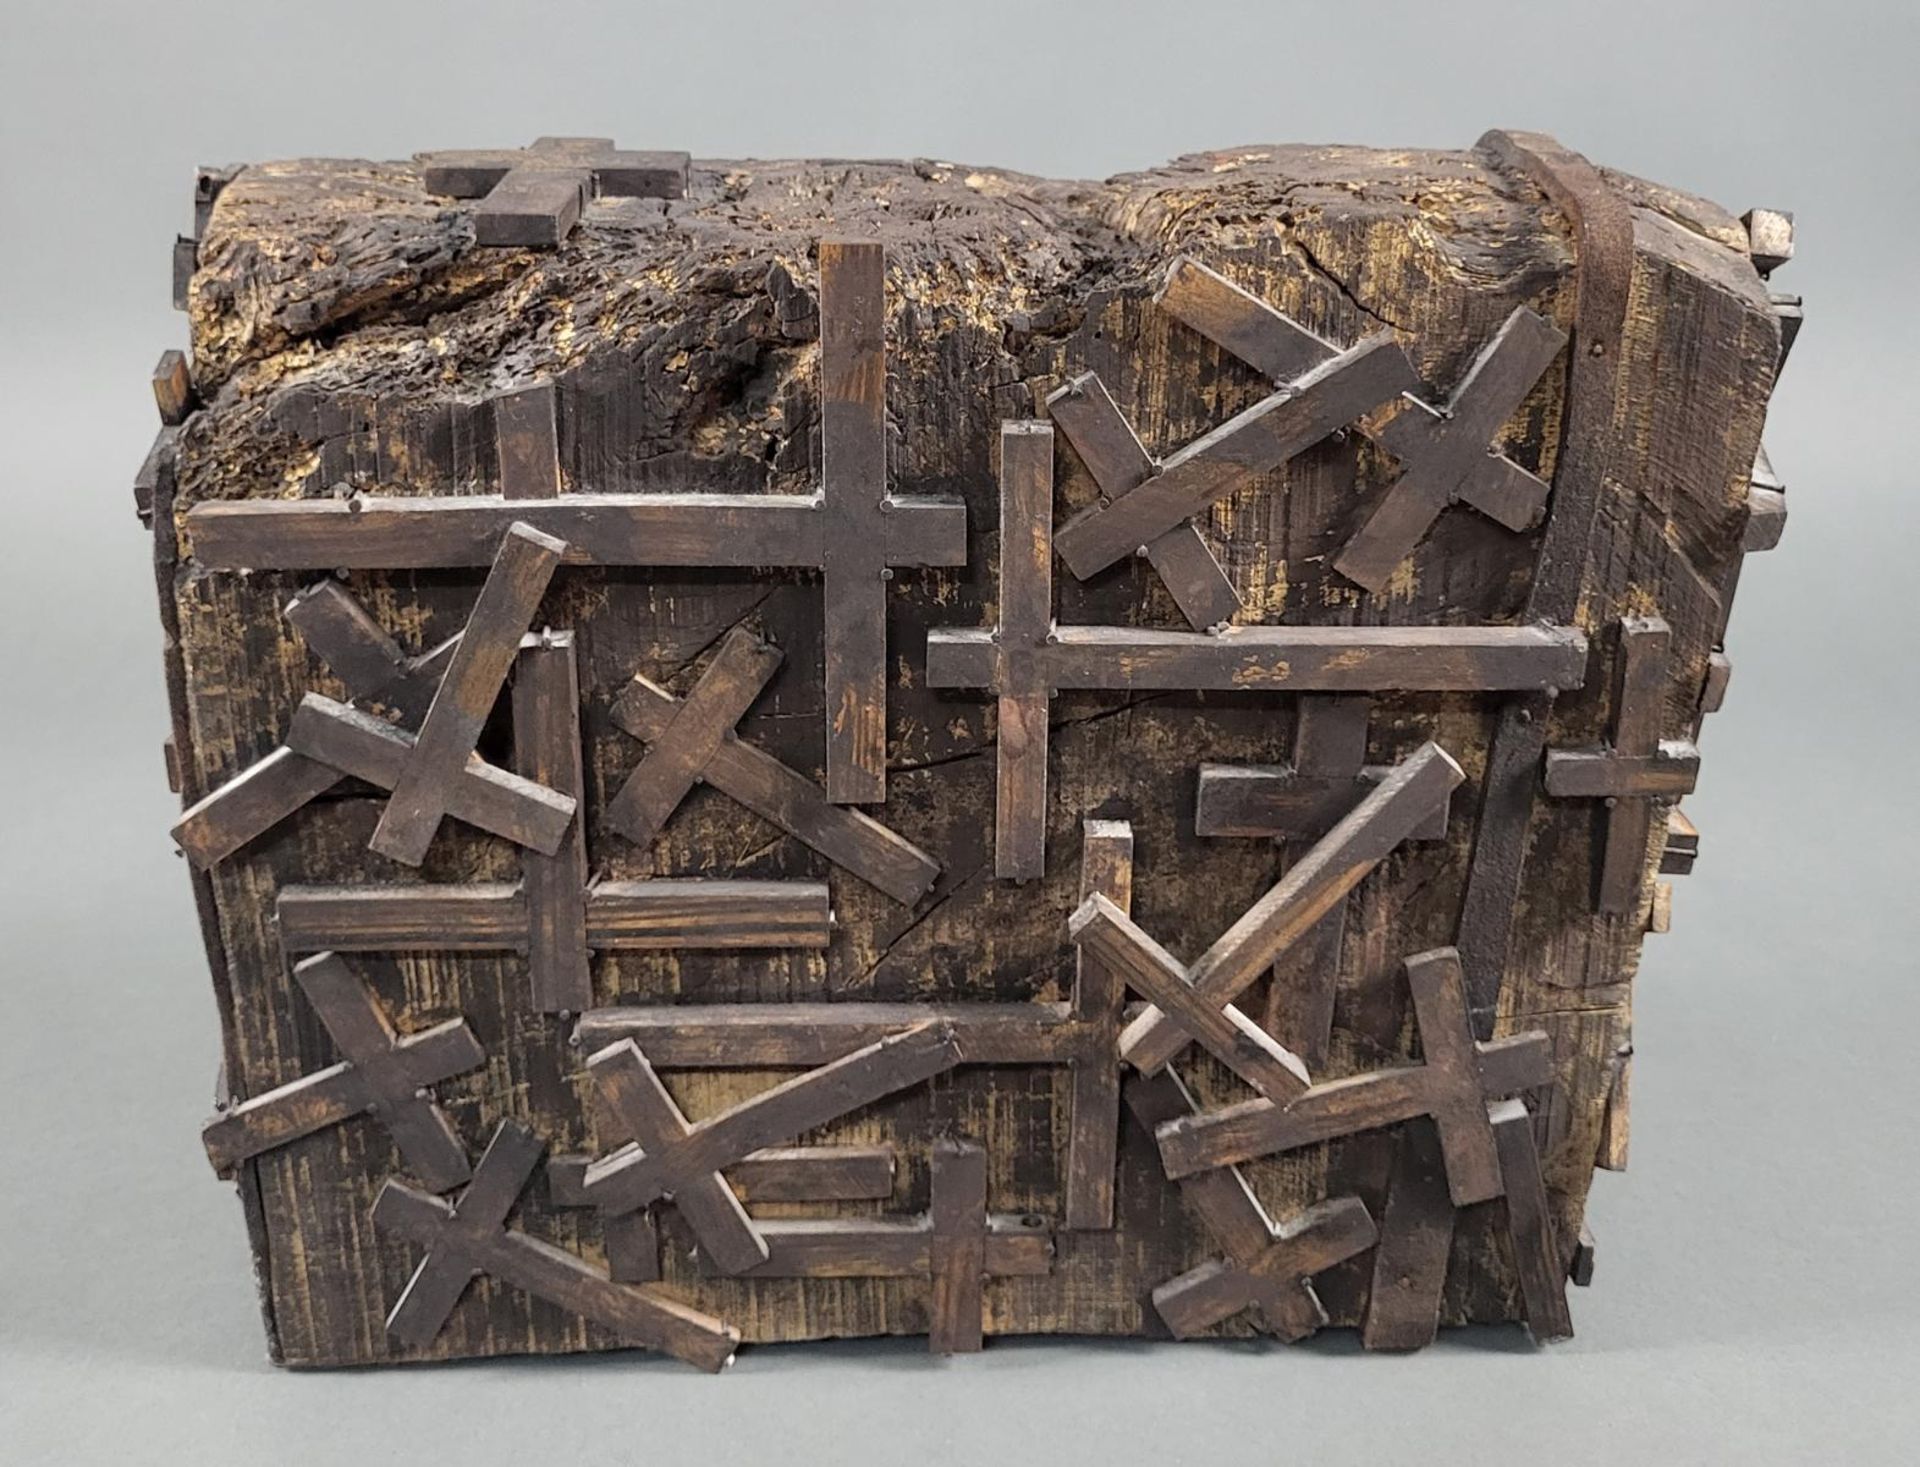 Horst Egon Kalinowski (1924 - 2013), "Exhumation Ausgrabung" - Image 3 of 7